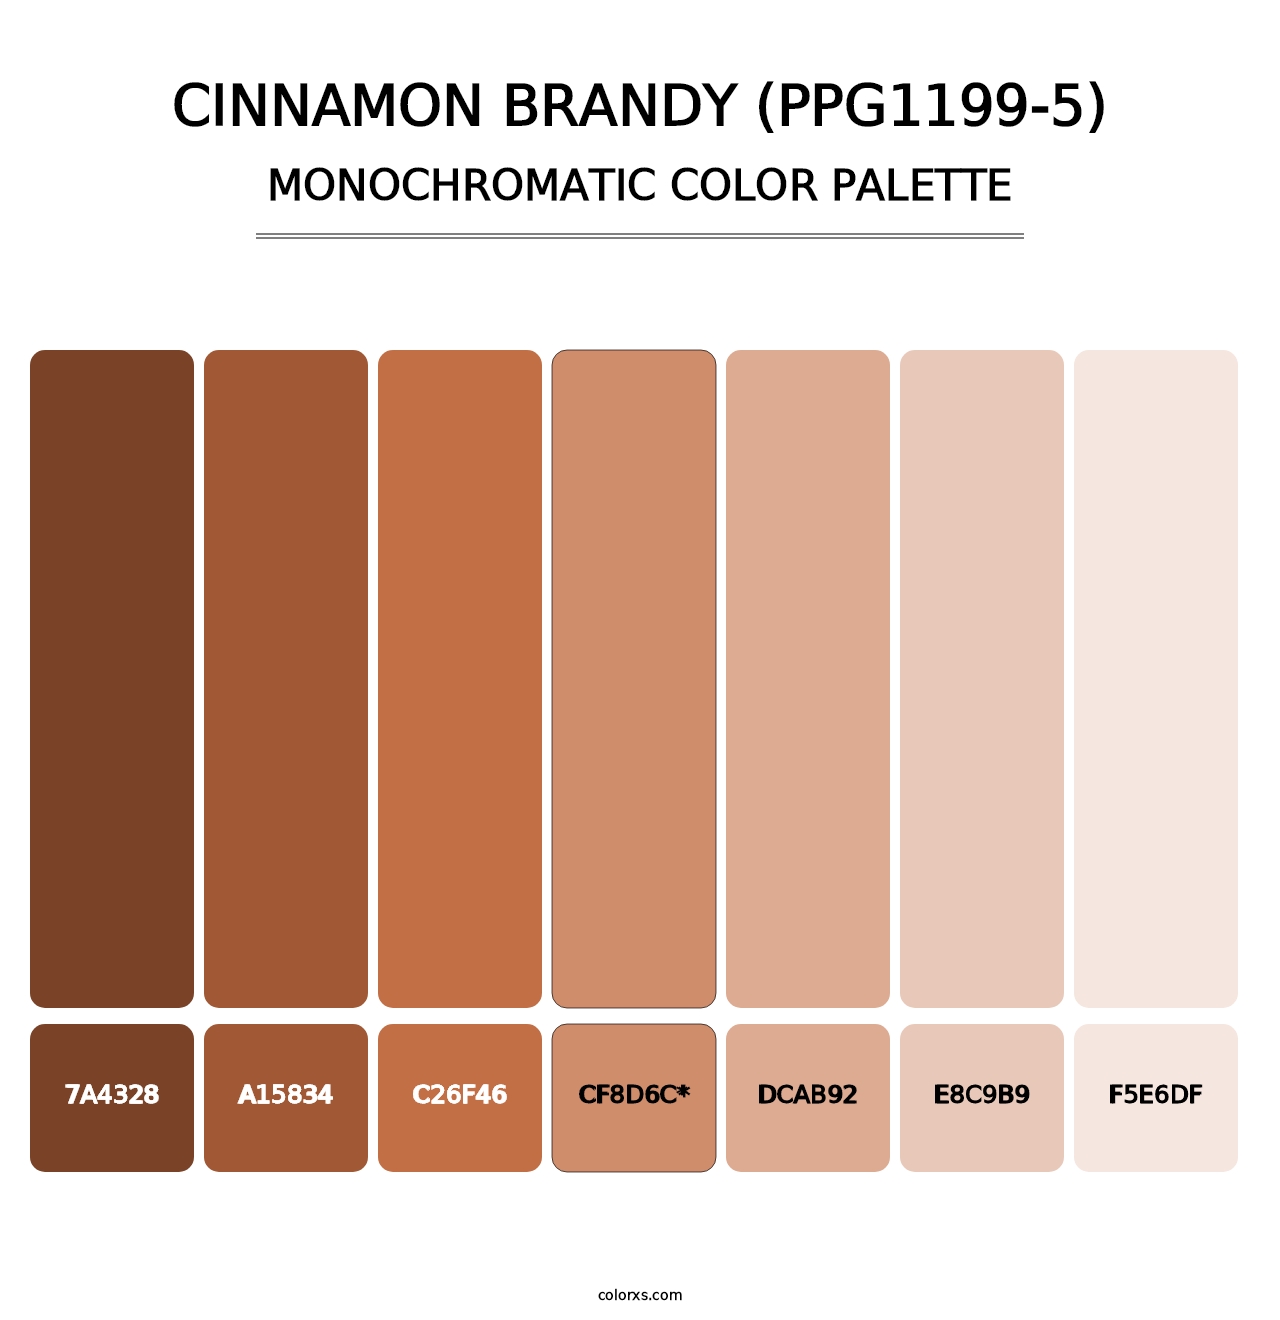 Cinnamon Brandy (PPG1199-5) - Monochromatic Color Palette